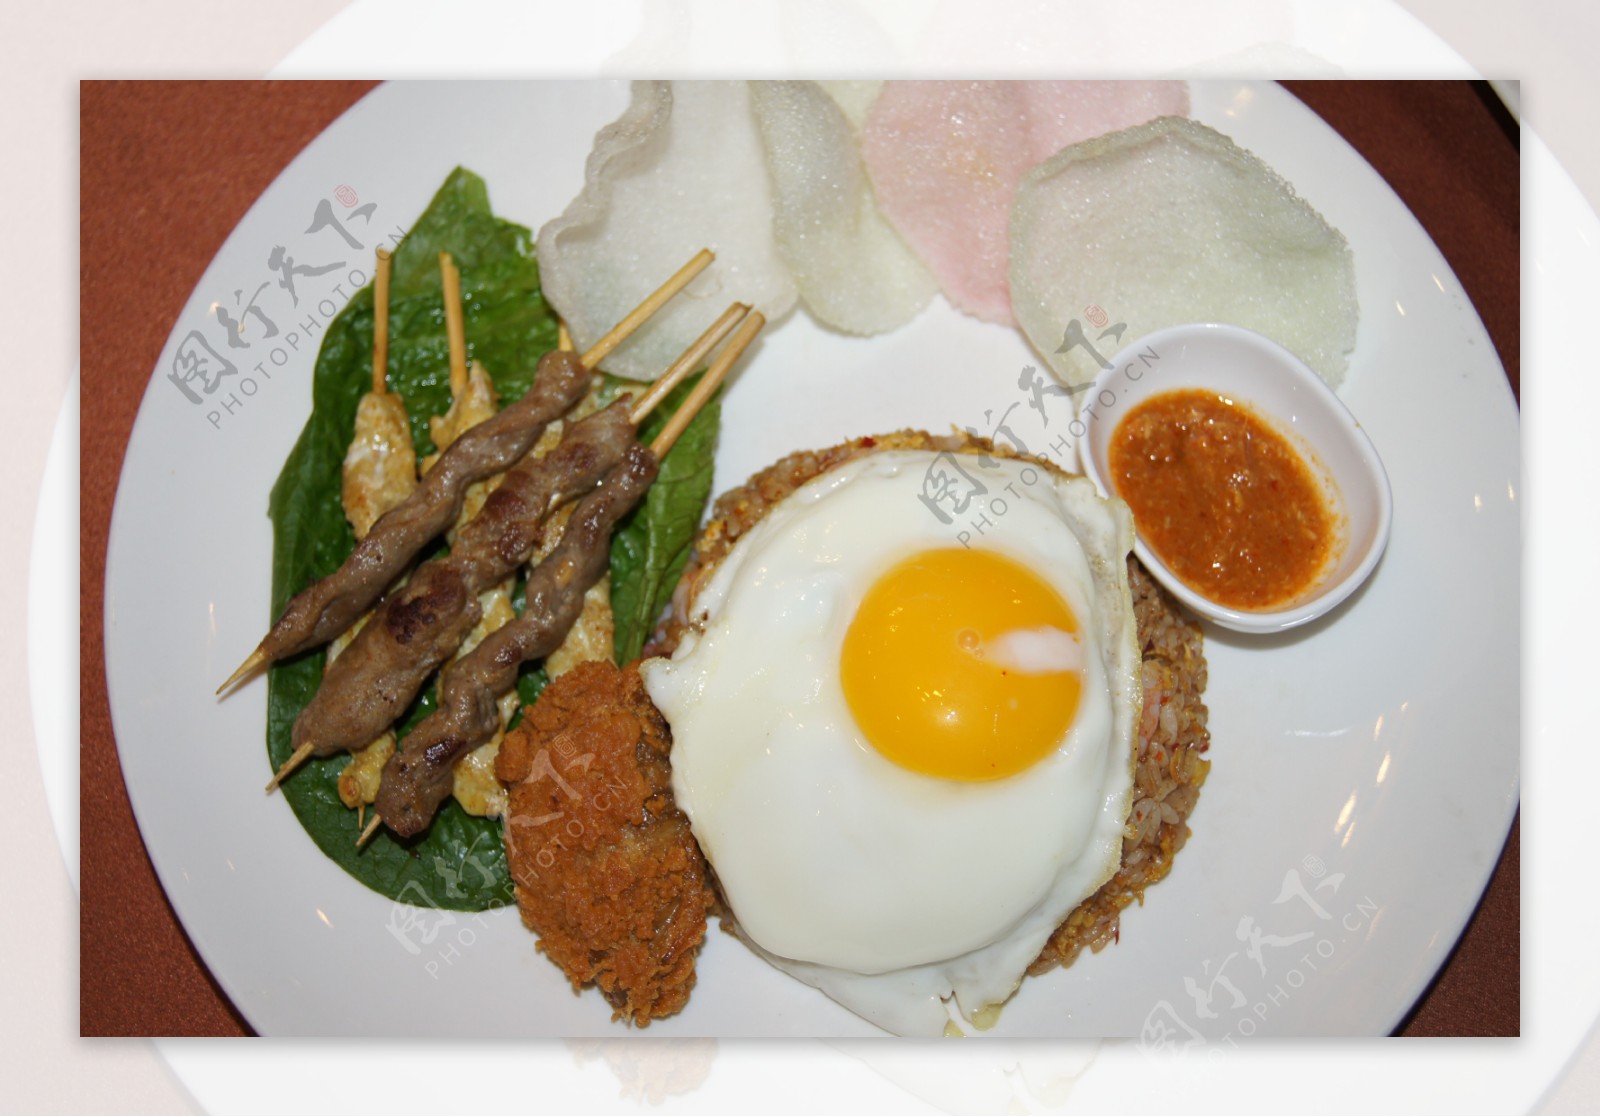 印尼炒饭图片